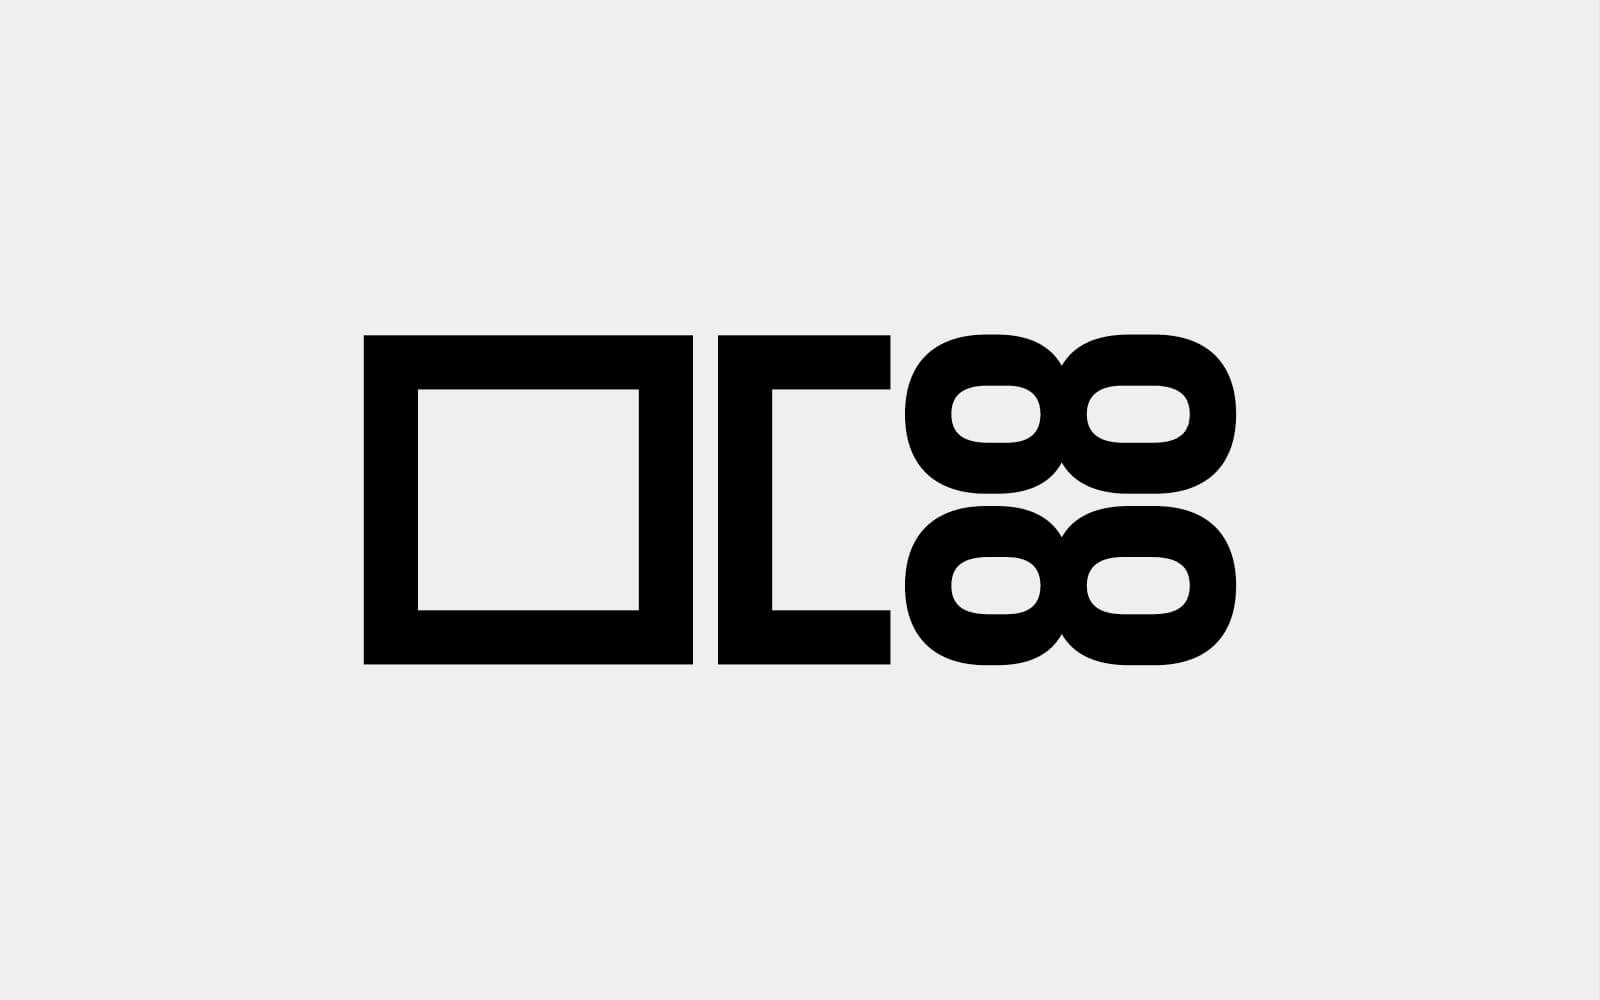 progetto del logo per catalogo serramenti complanari, dallo stile essenziale tecnico